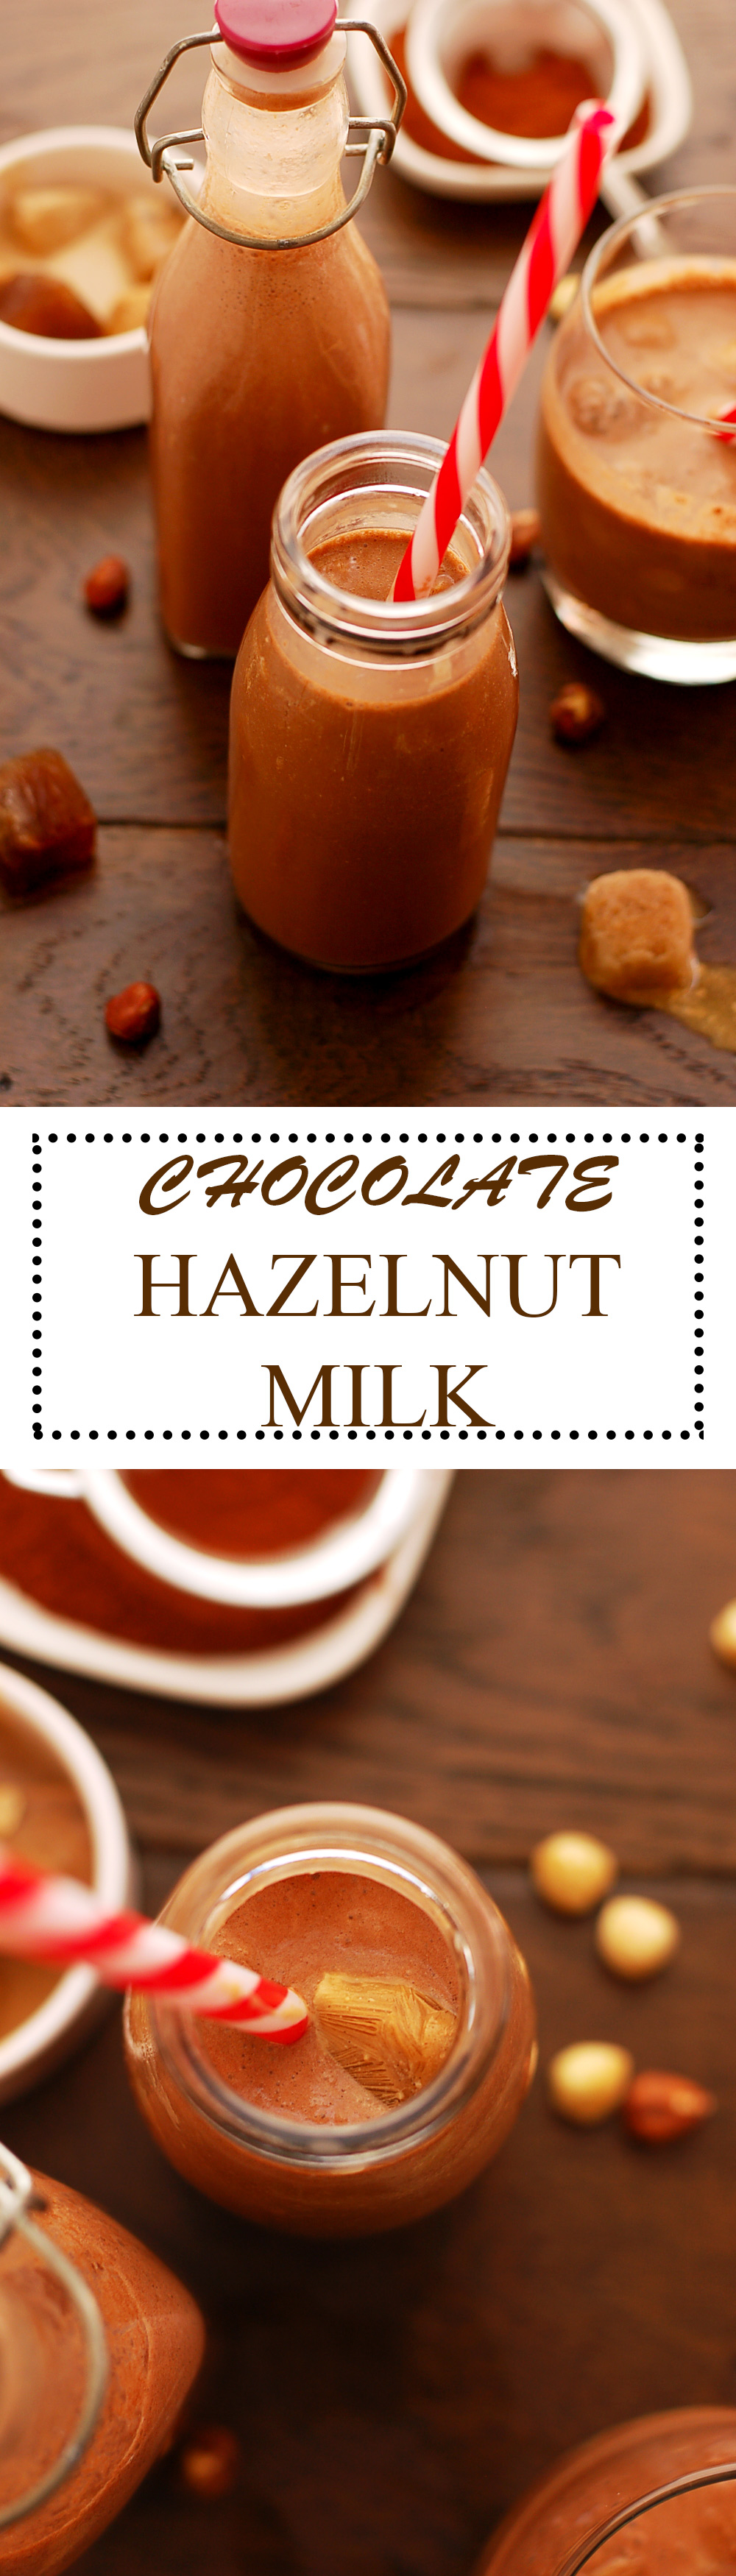 Hazelnut-Milk-Pinterest